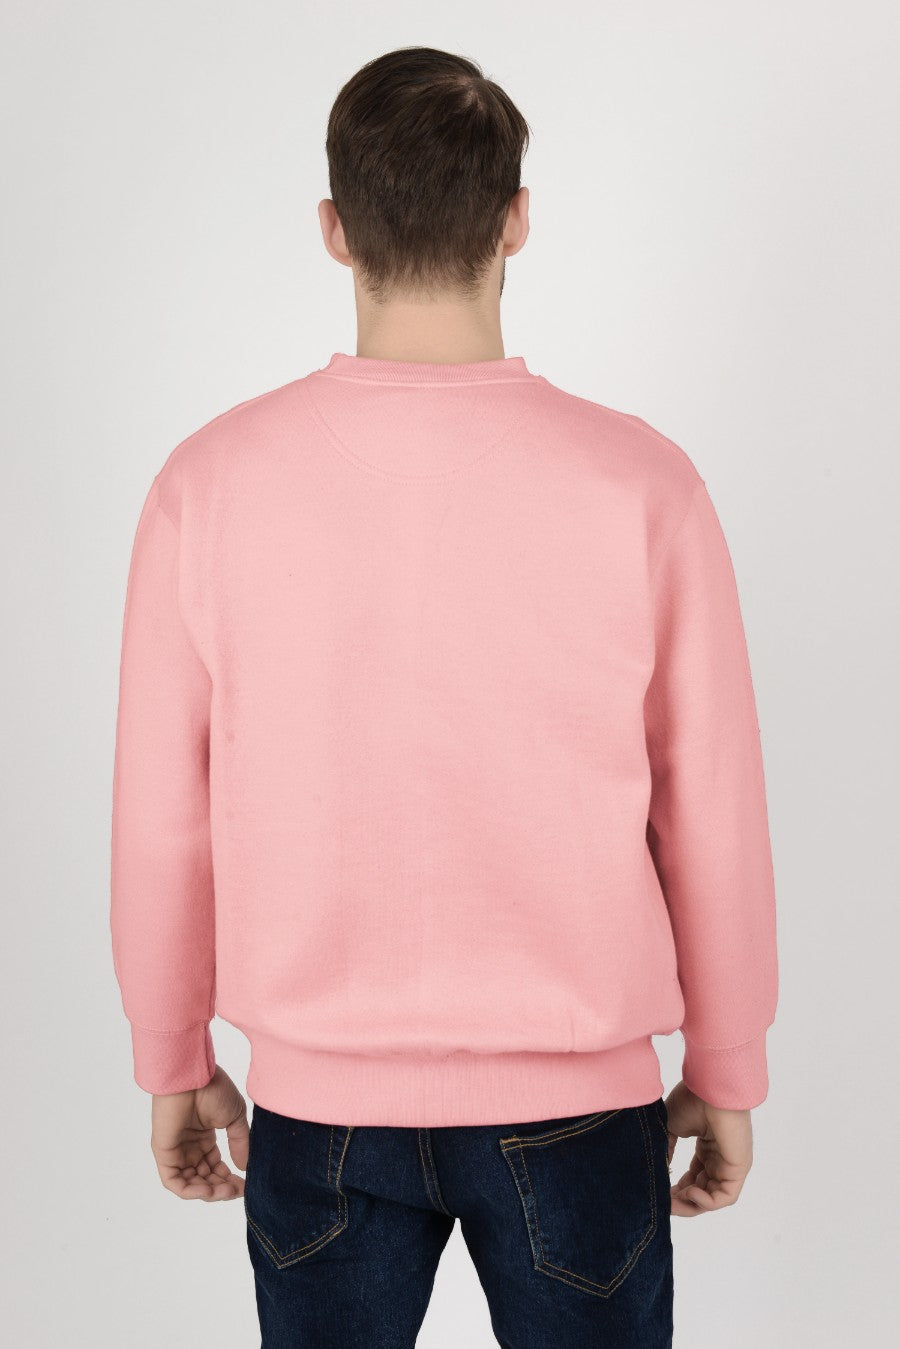 Mens-Plain-Fleece-Sweatshirt-Jersey-Pink